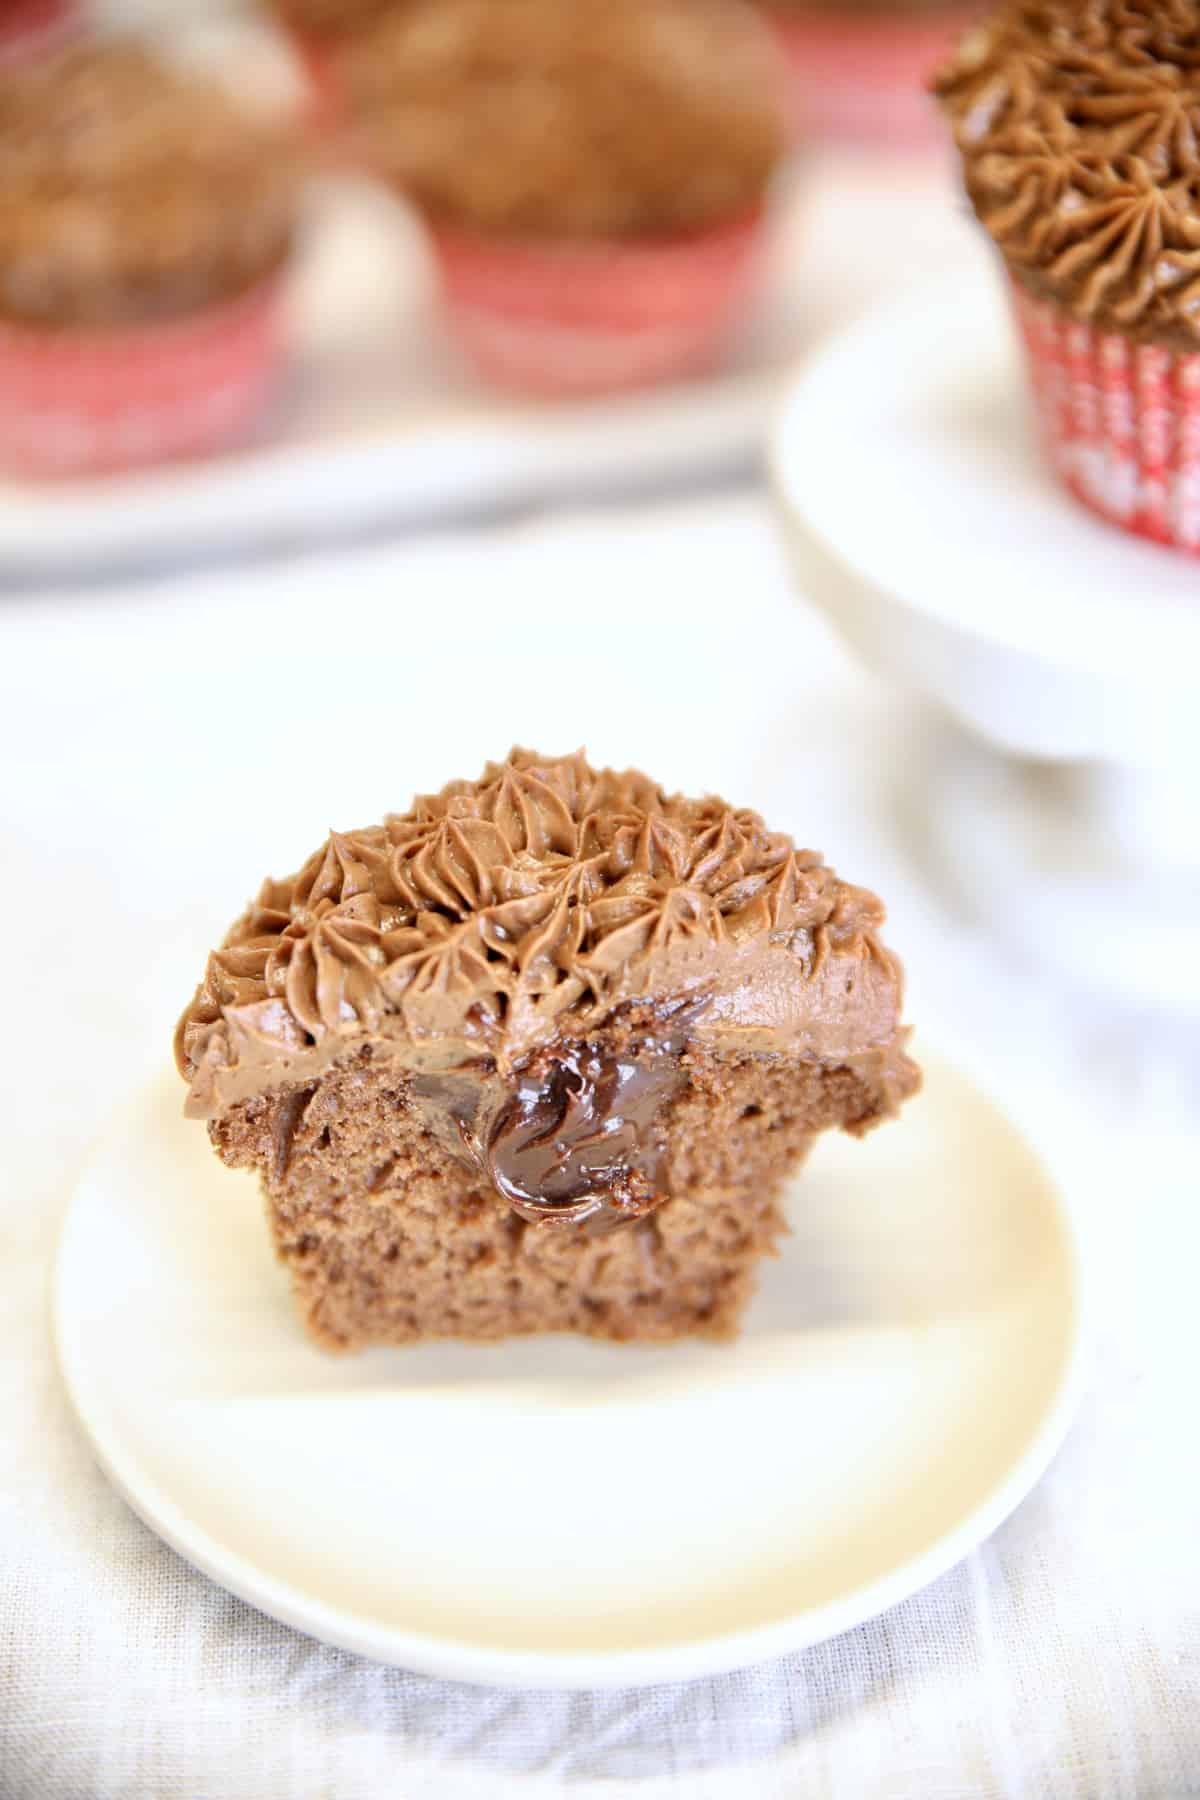 Chocolate ganache filled cupcake, cut in half.